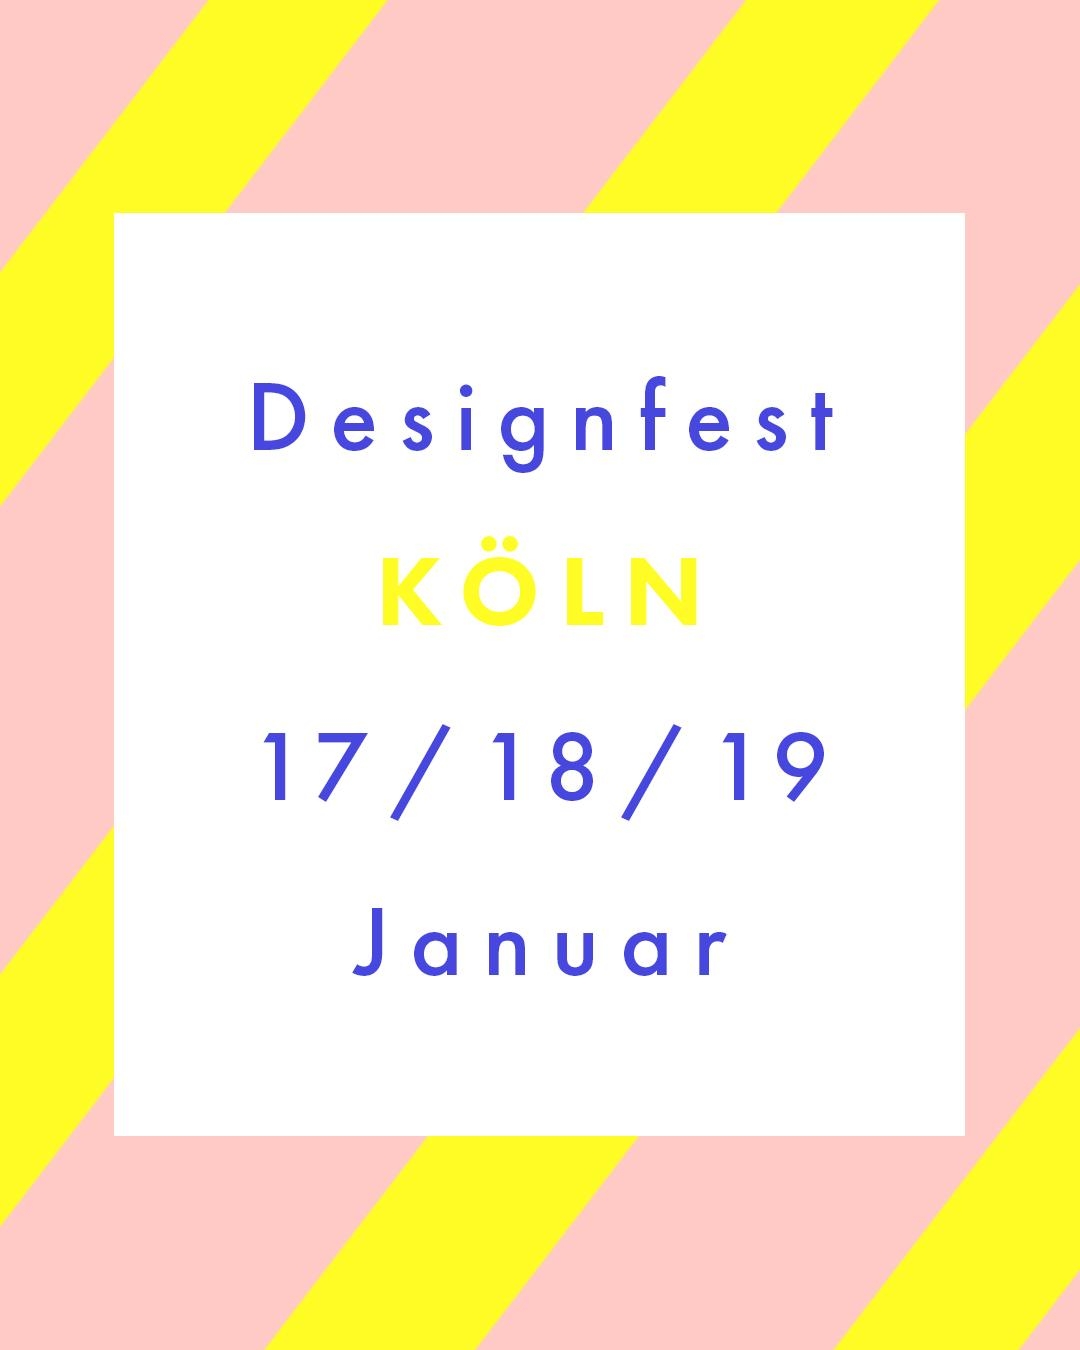 Am Freitag geht's los... das #Designfest startet! 